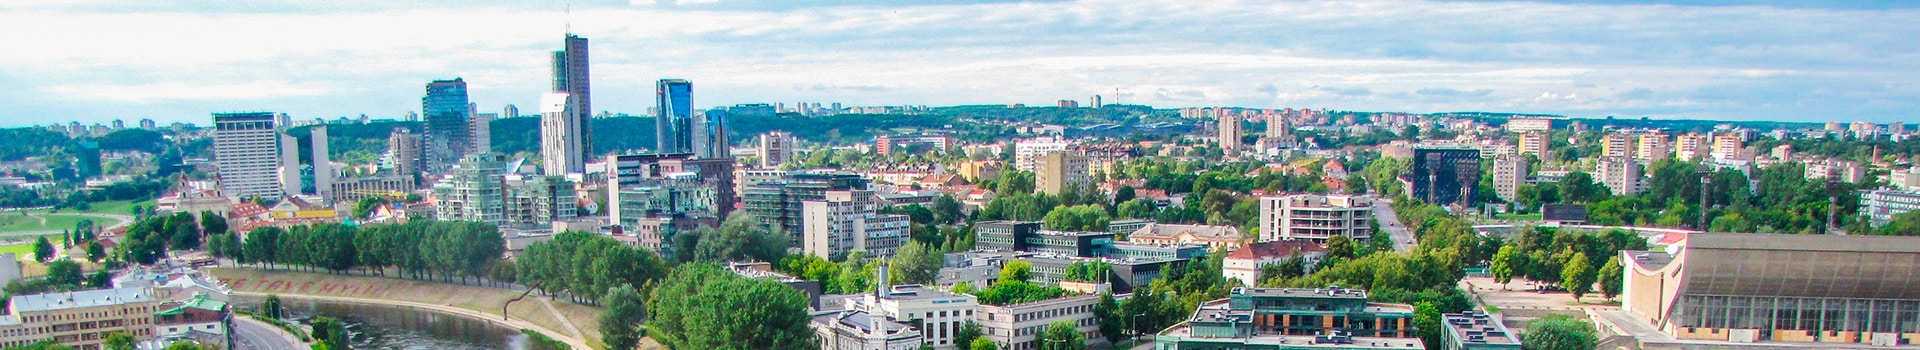 Nizza - Vilnius